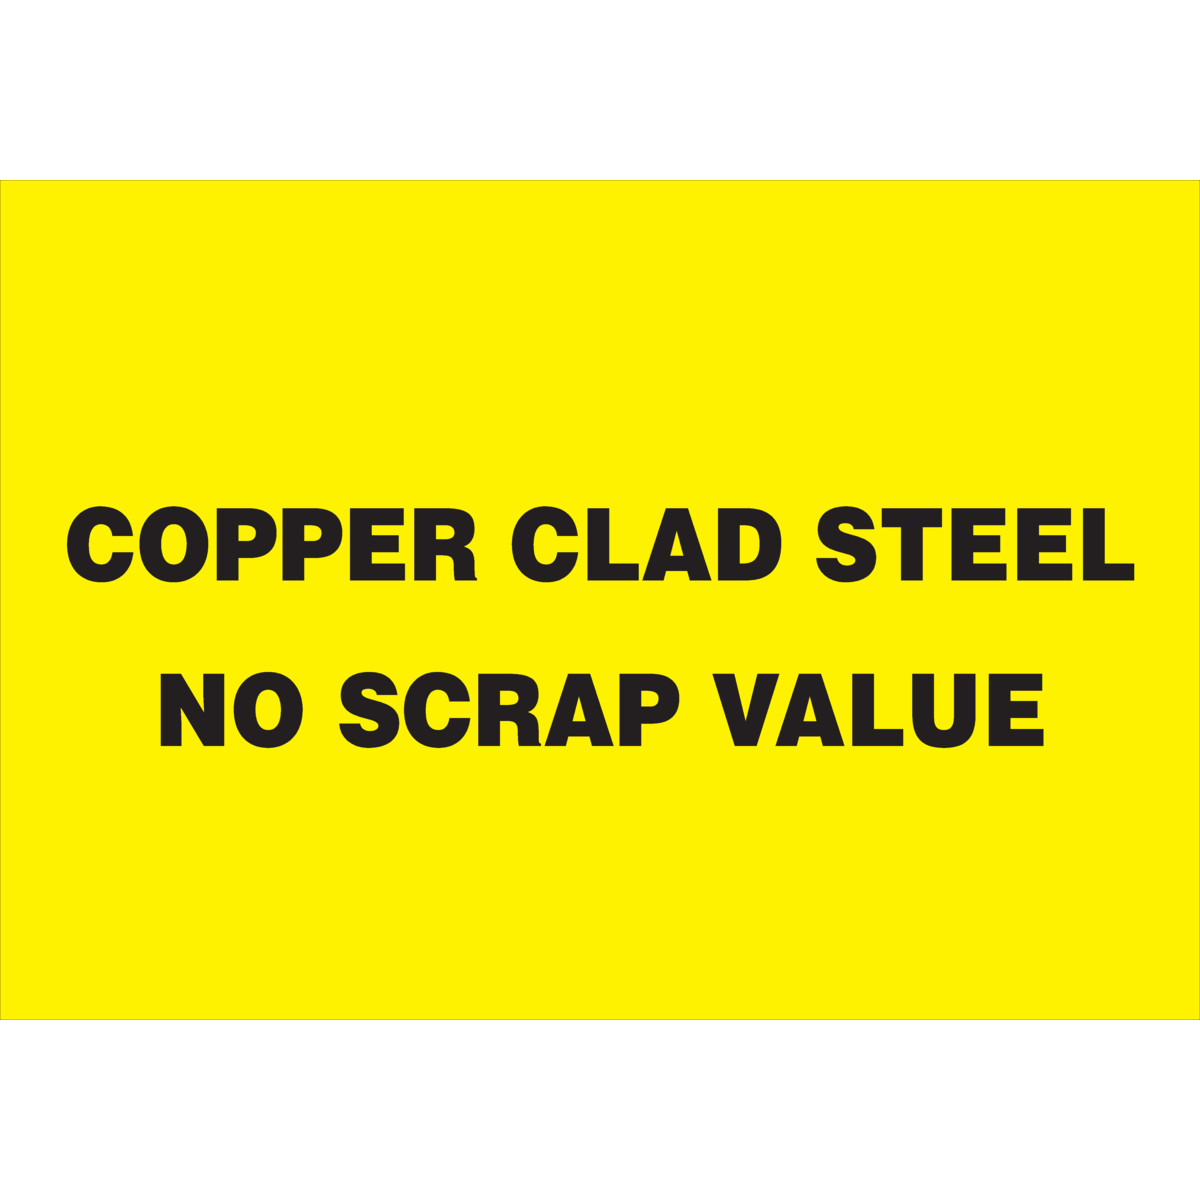 Copper Clad Steel No Scrap Value Sign